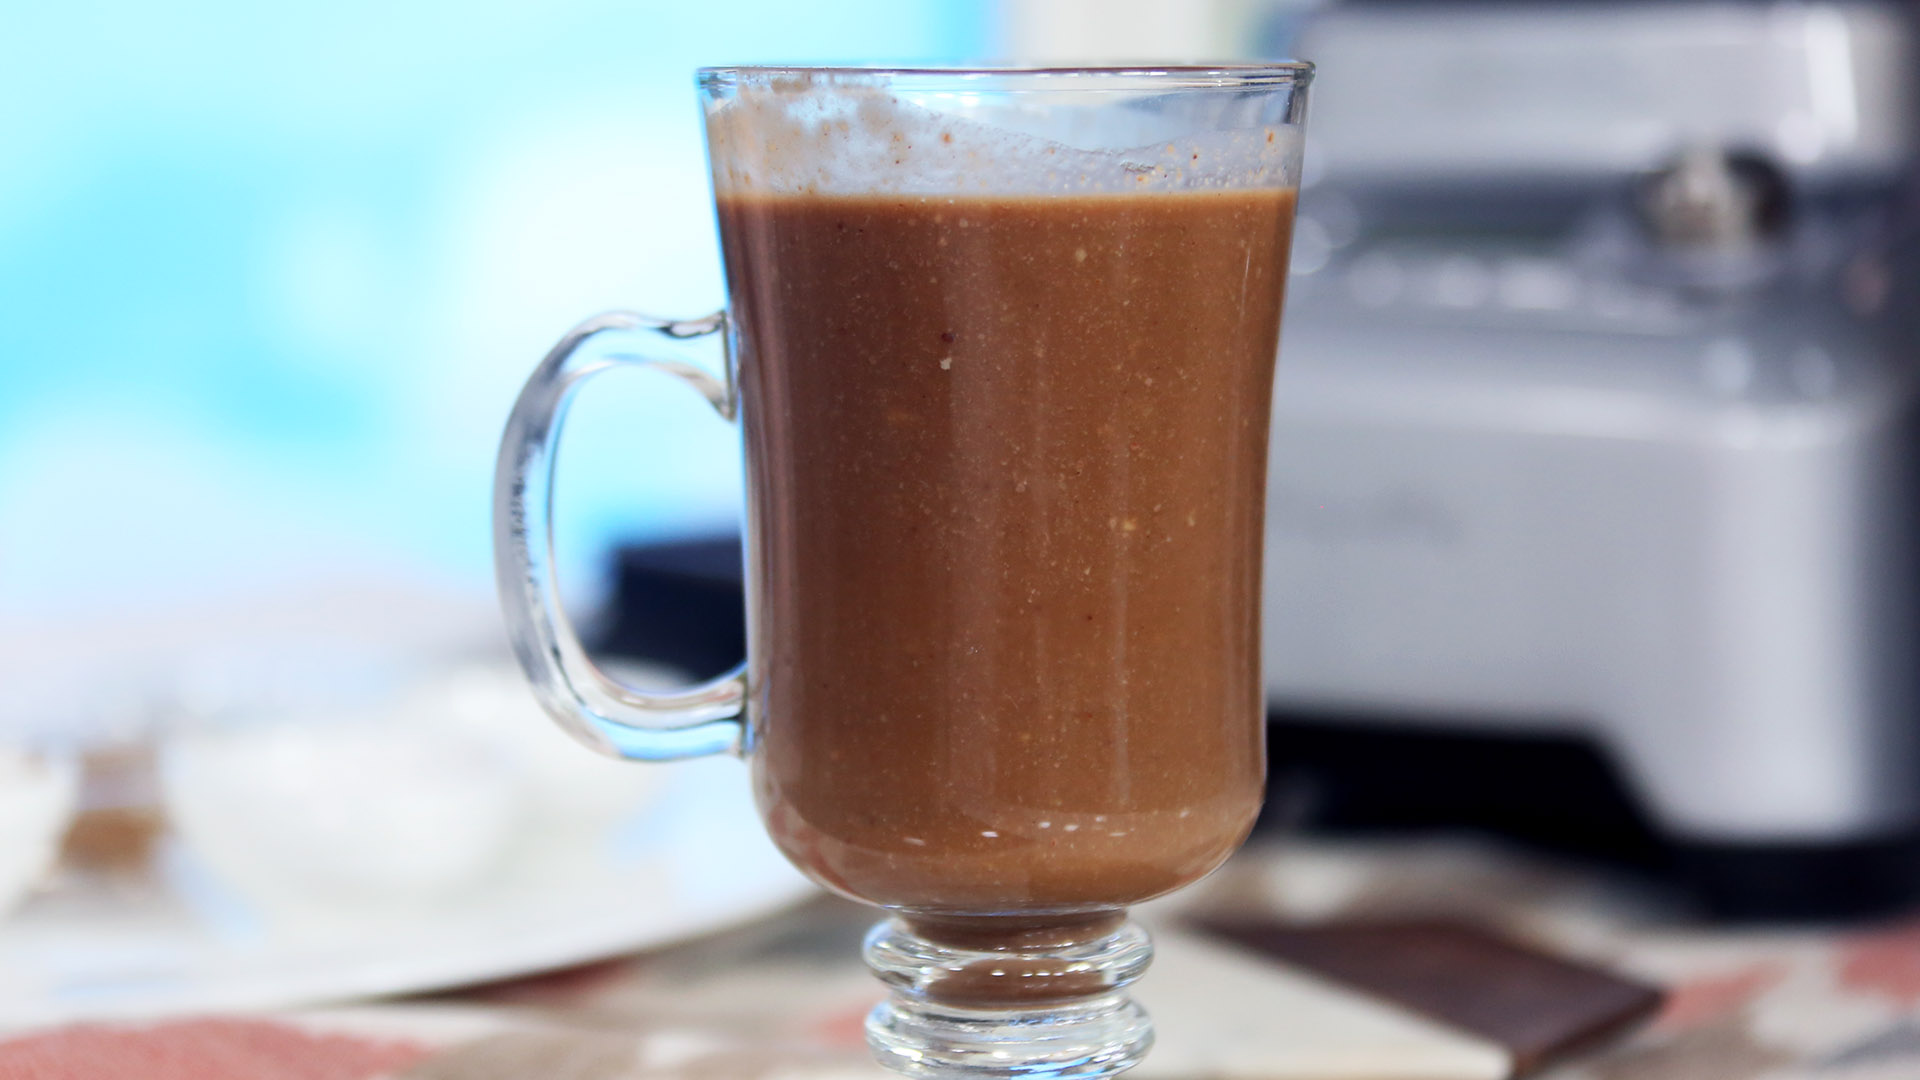 "Raw-tella" hot chocolate